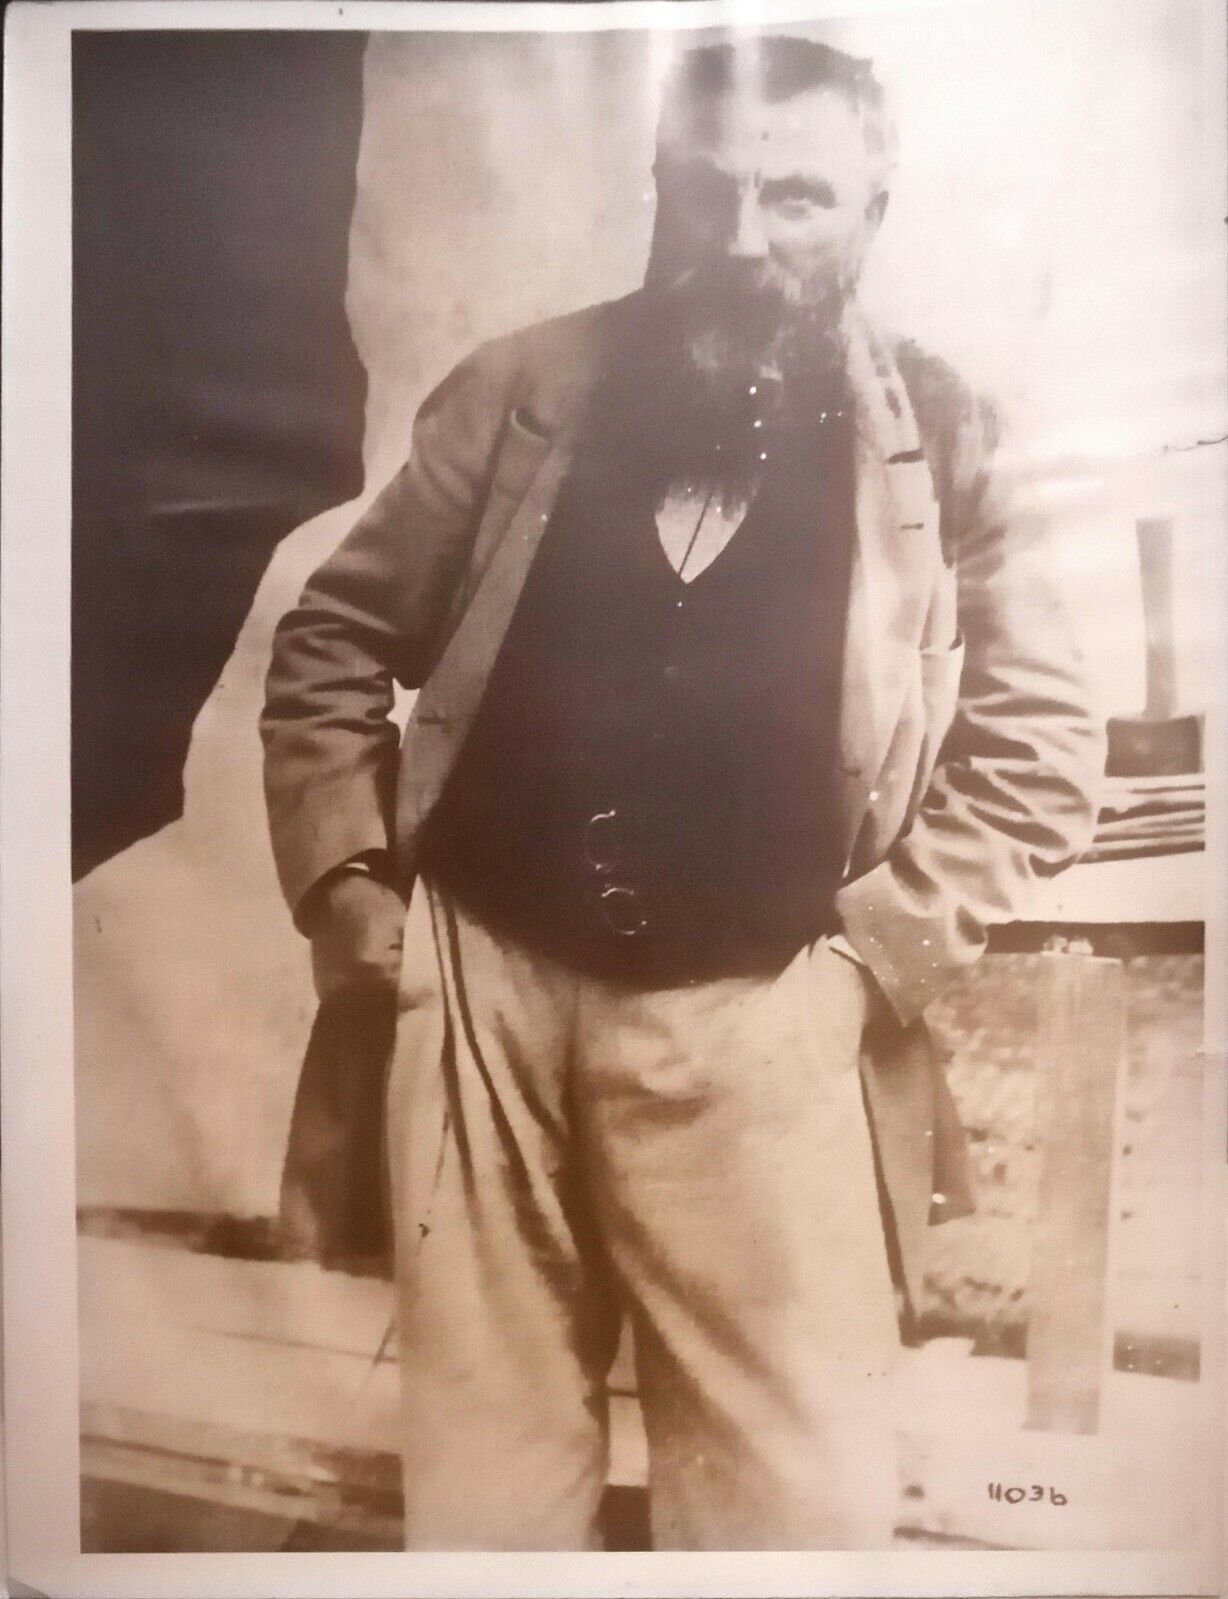 AUGUSTE RODIN 1917 FAMOUS SCULPTOR PHOTO PARIS FRANCE THE THINKER ARTIST LEGEND